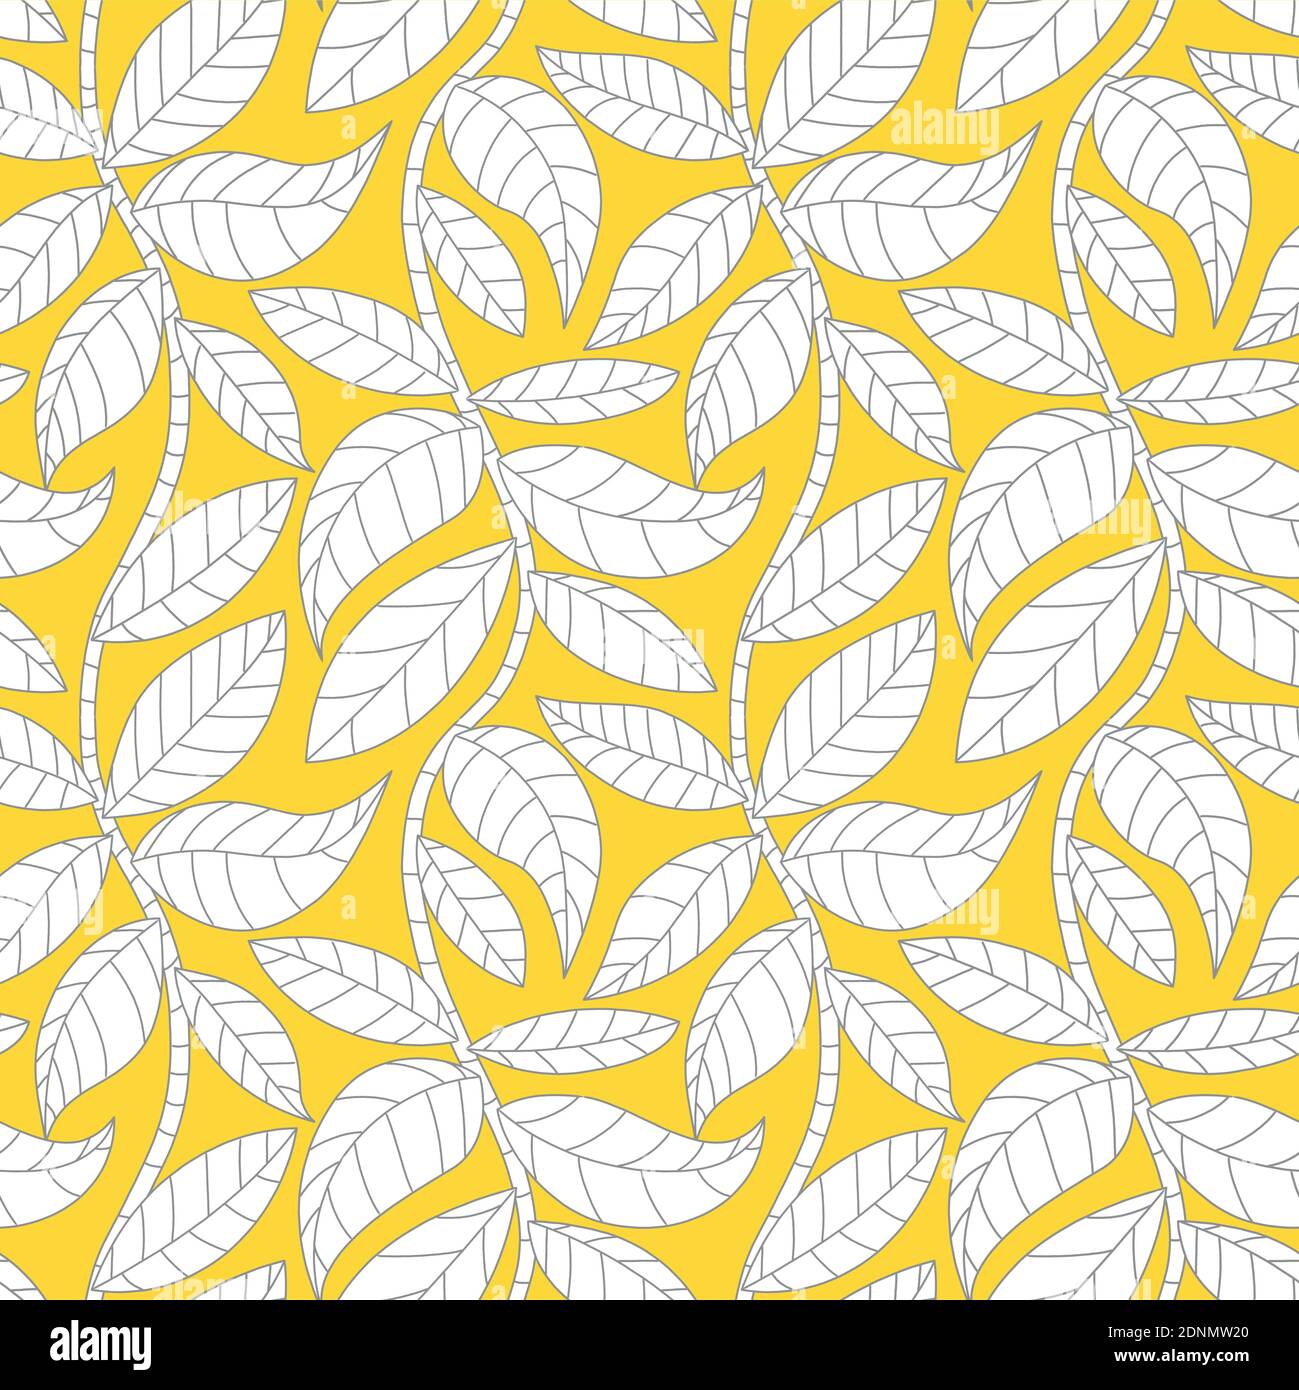 Nahtloses Vektormuster mit einfachen Blättern auf Ästen in ultimativem Grau und leuchtendem Gelb. Lebendige Natur Tapete Hintergrund. Stock Vektor